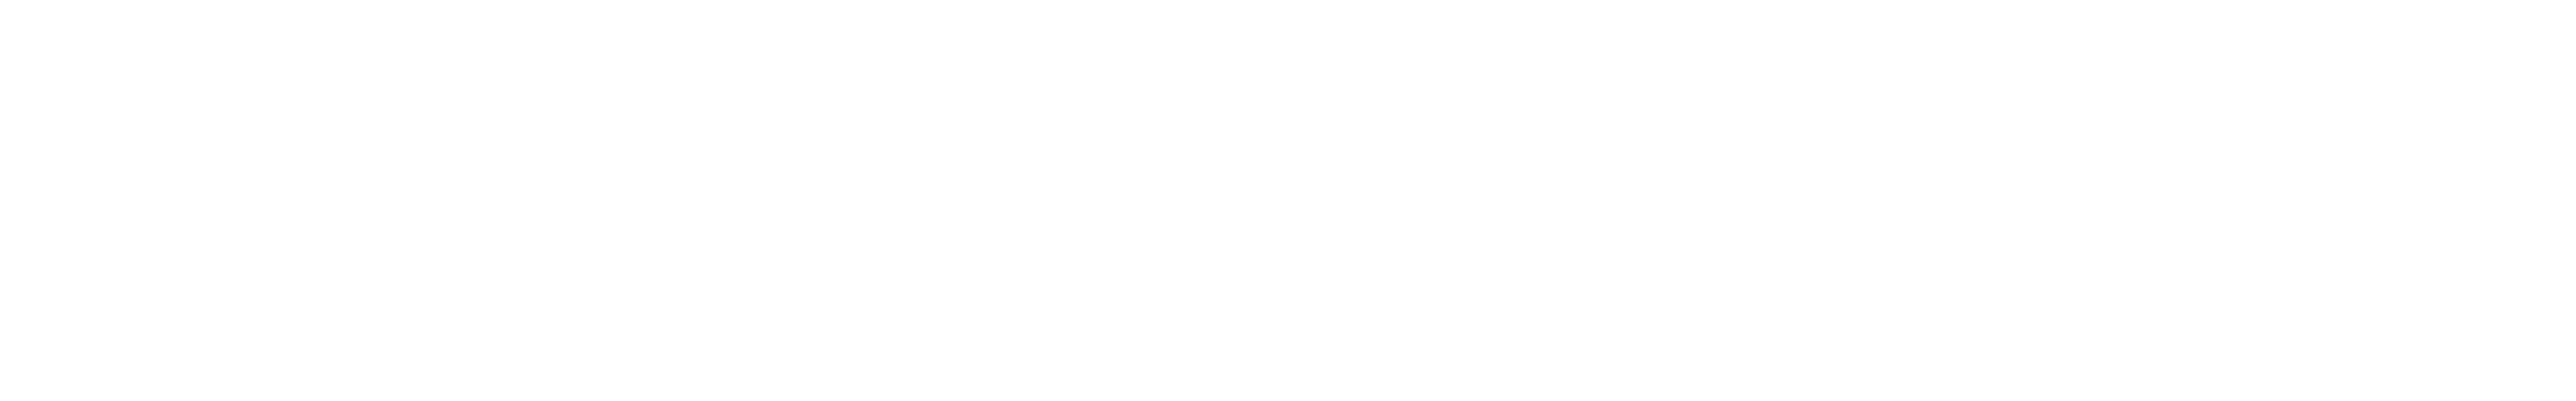 Protoolio logo